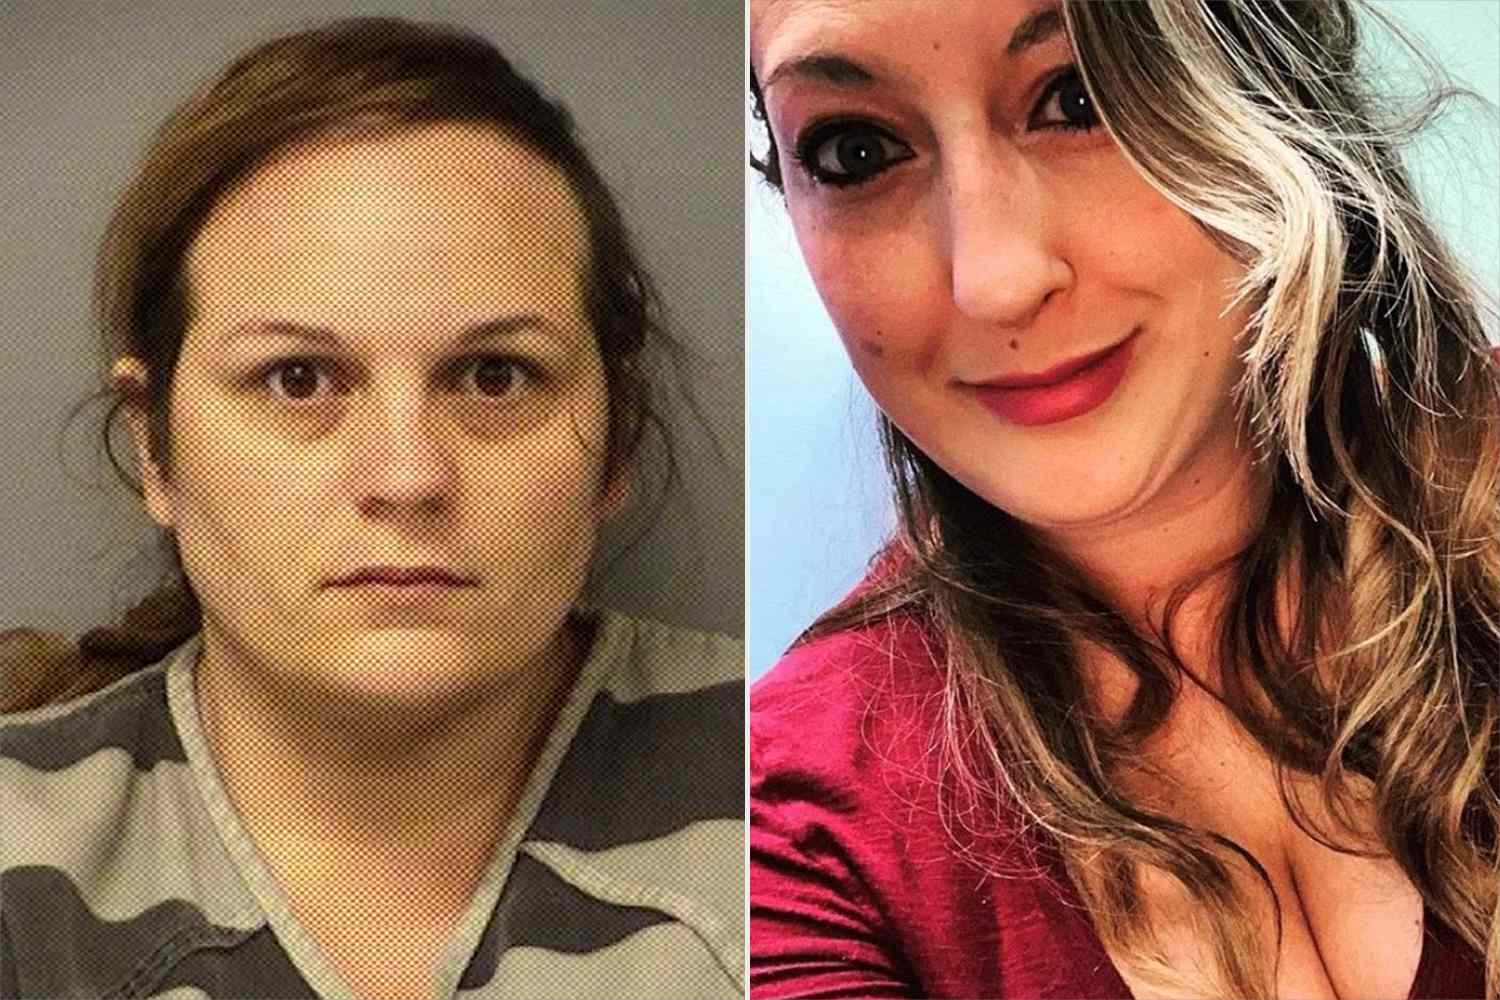 テキサス州の女性が親友の首を絞め、生まれたばかりの娘を盗んだとして起訴され、有罪を認める見込み